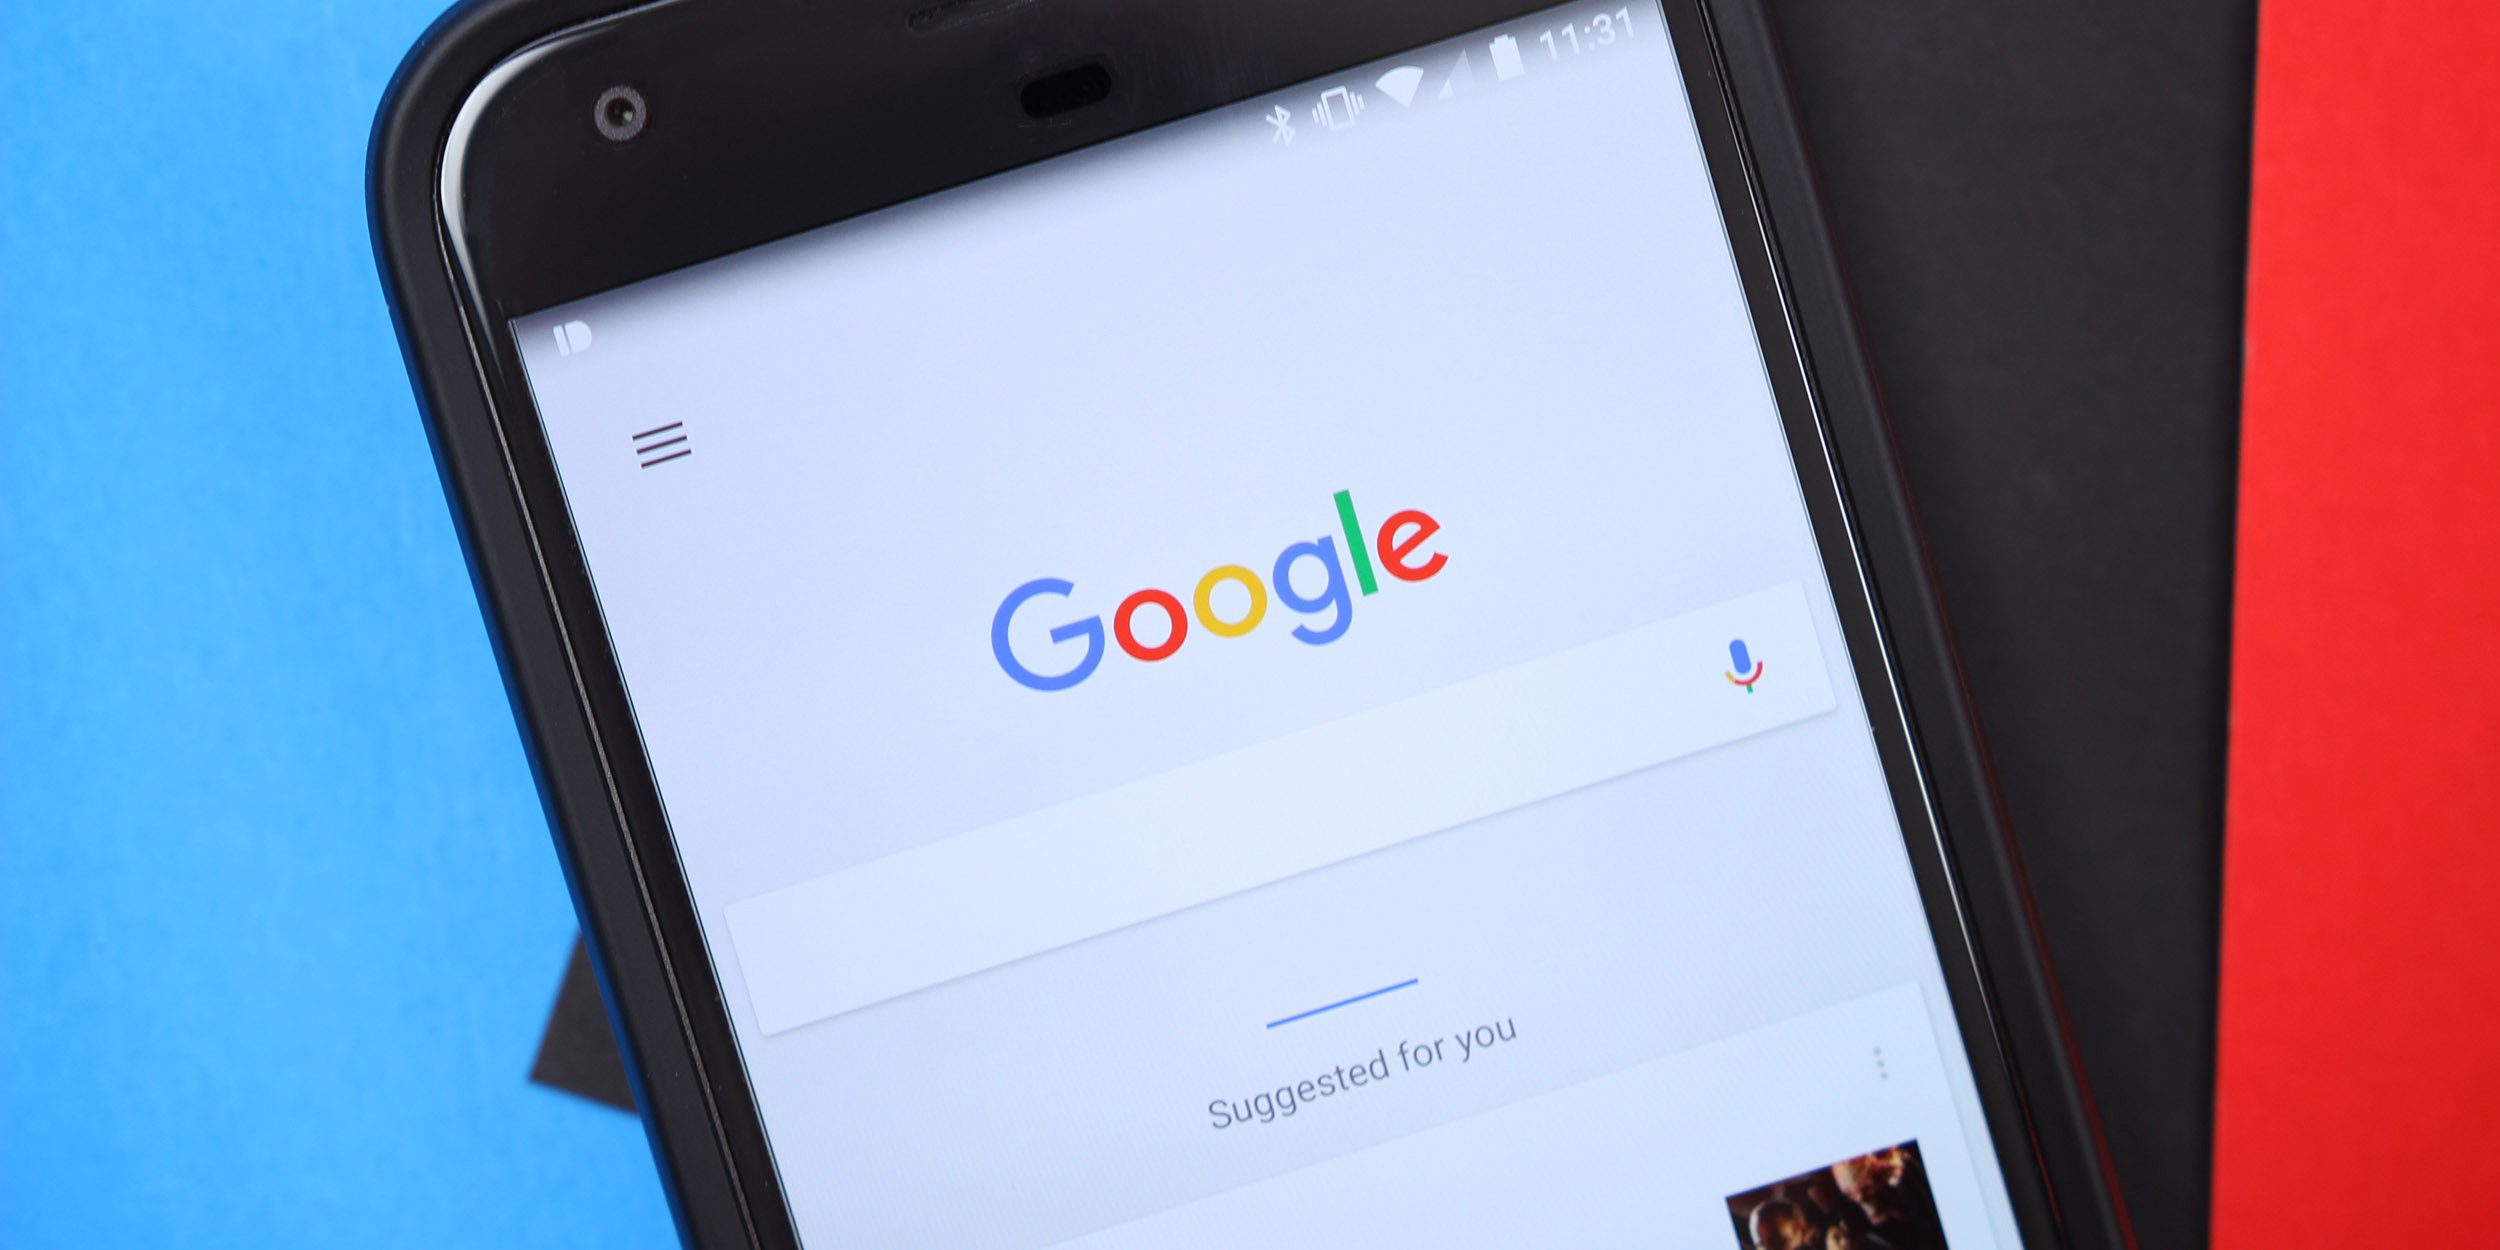 Pesquisa do Google testando cartões arredondados, cores suaves e muito mais no Android, iOS, Web para dispositivos móveis